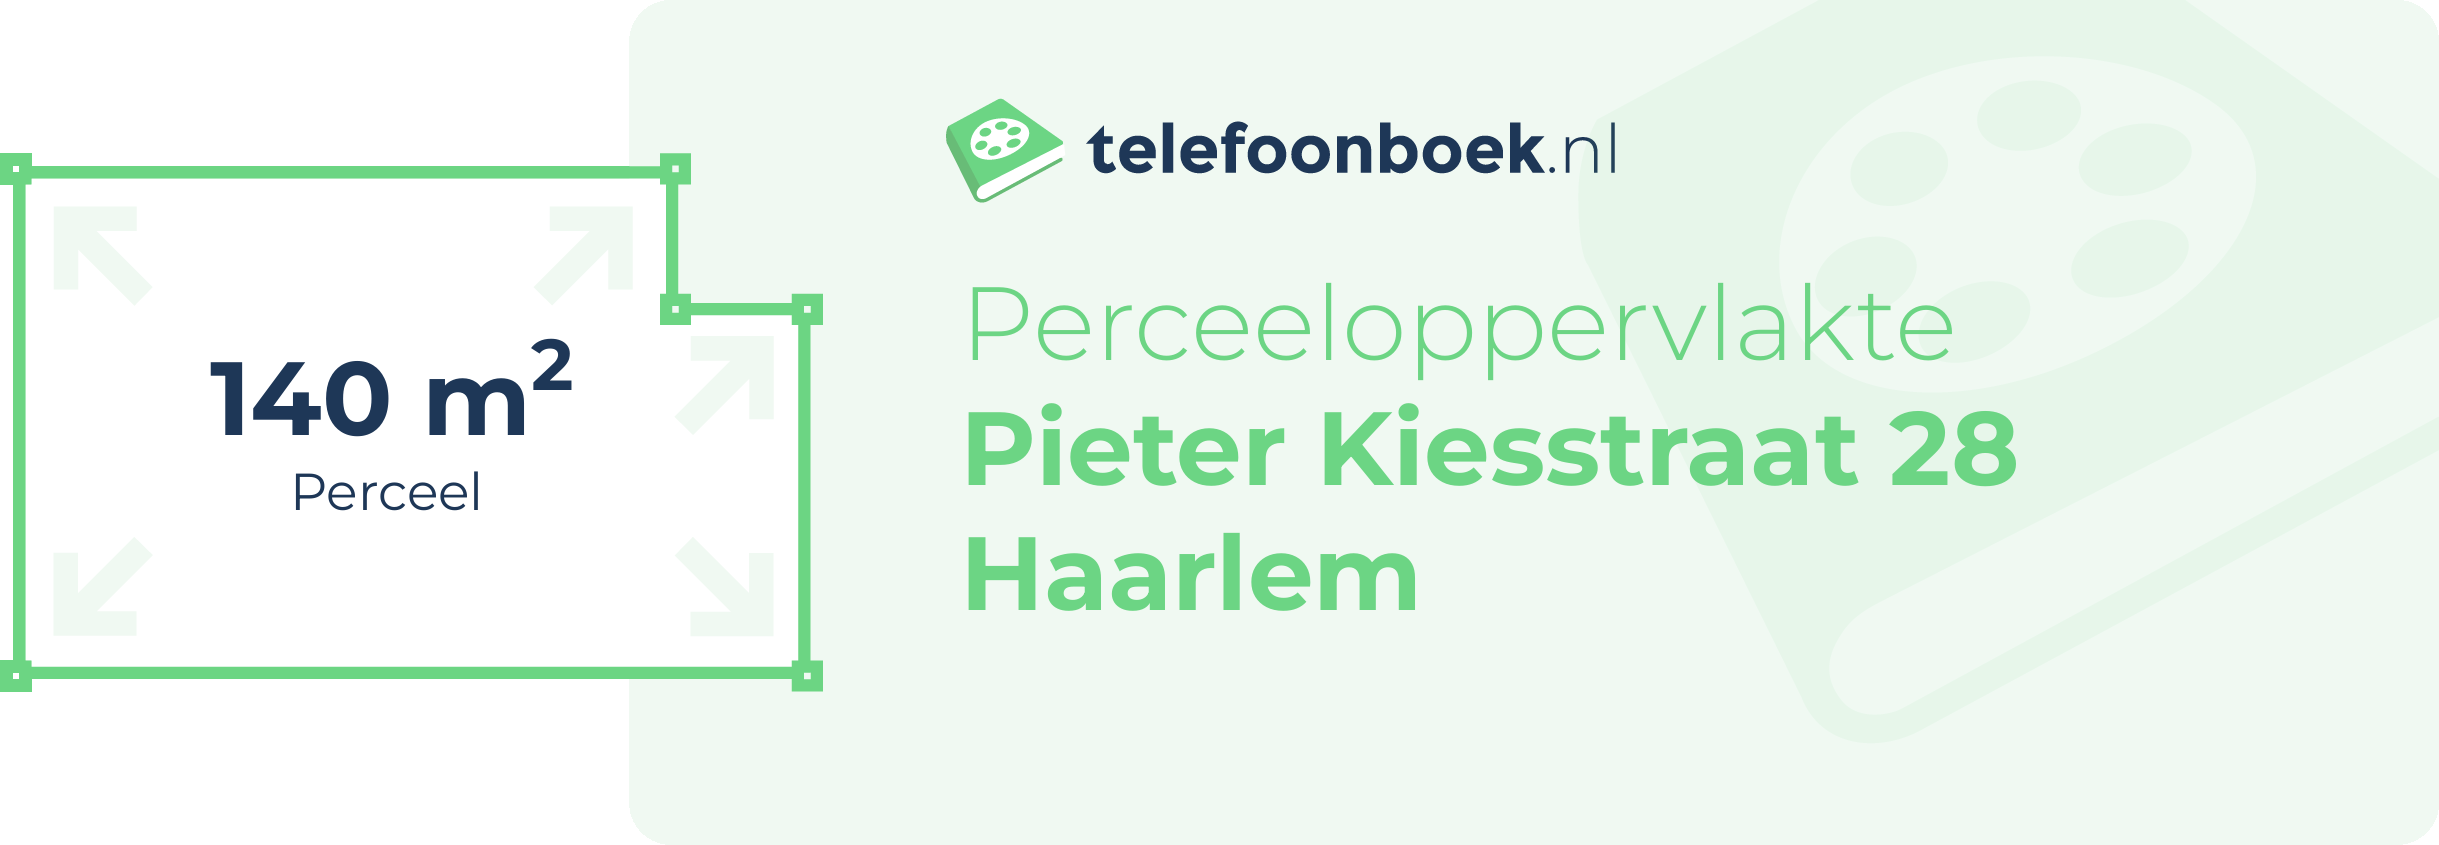 Perceeloppervlakte Pieter Kiesstraat 28 Haarlem